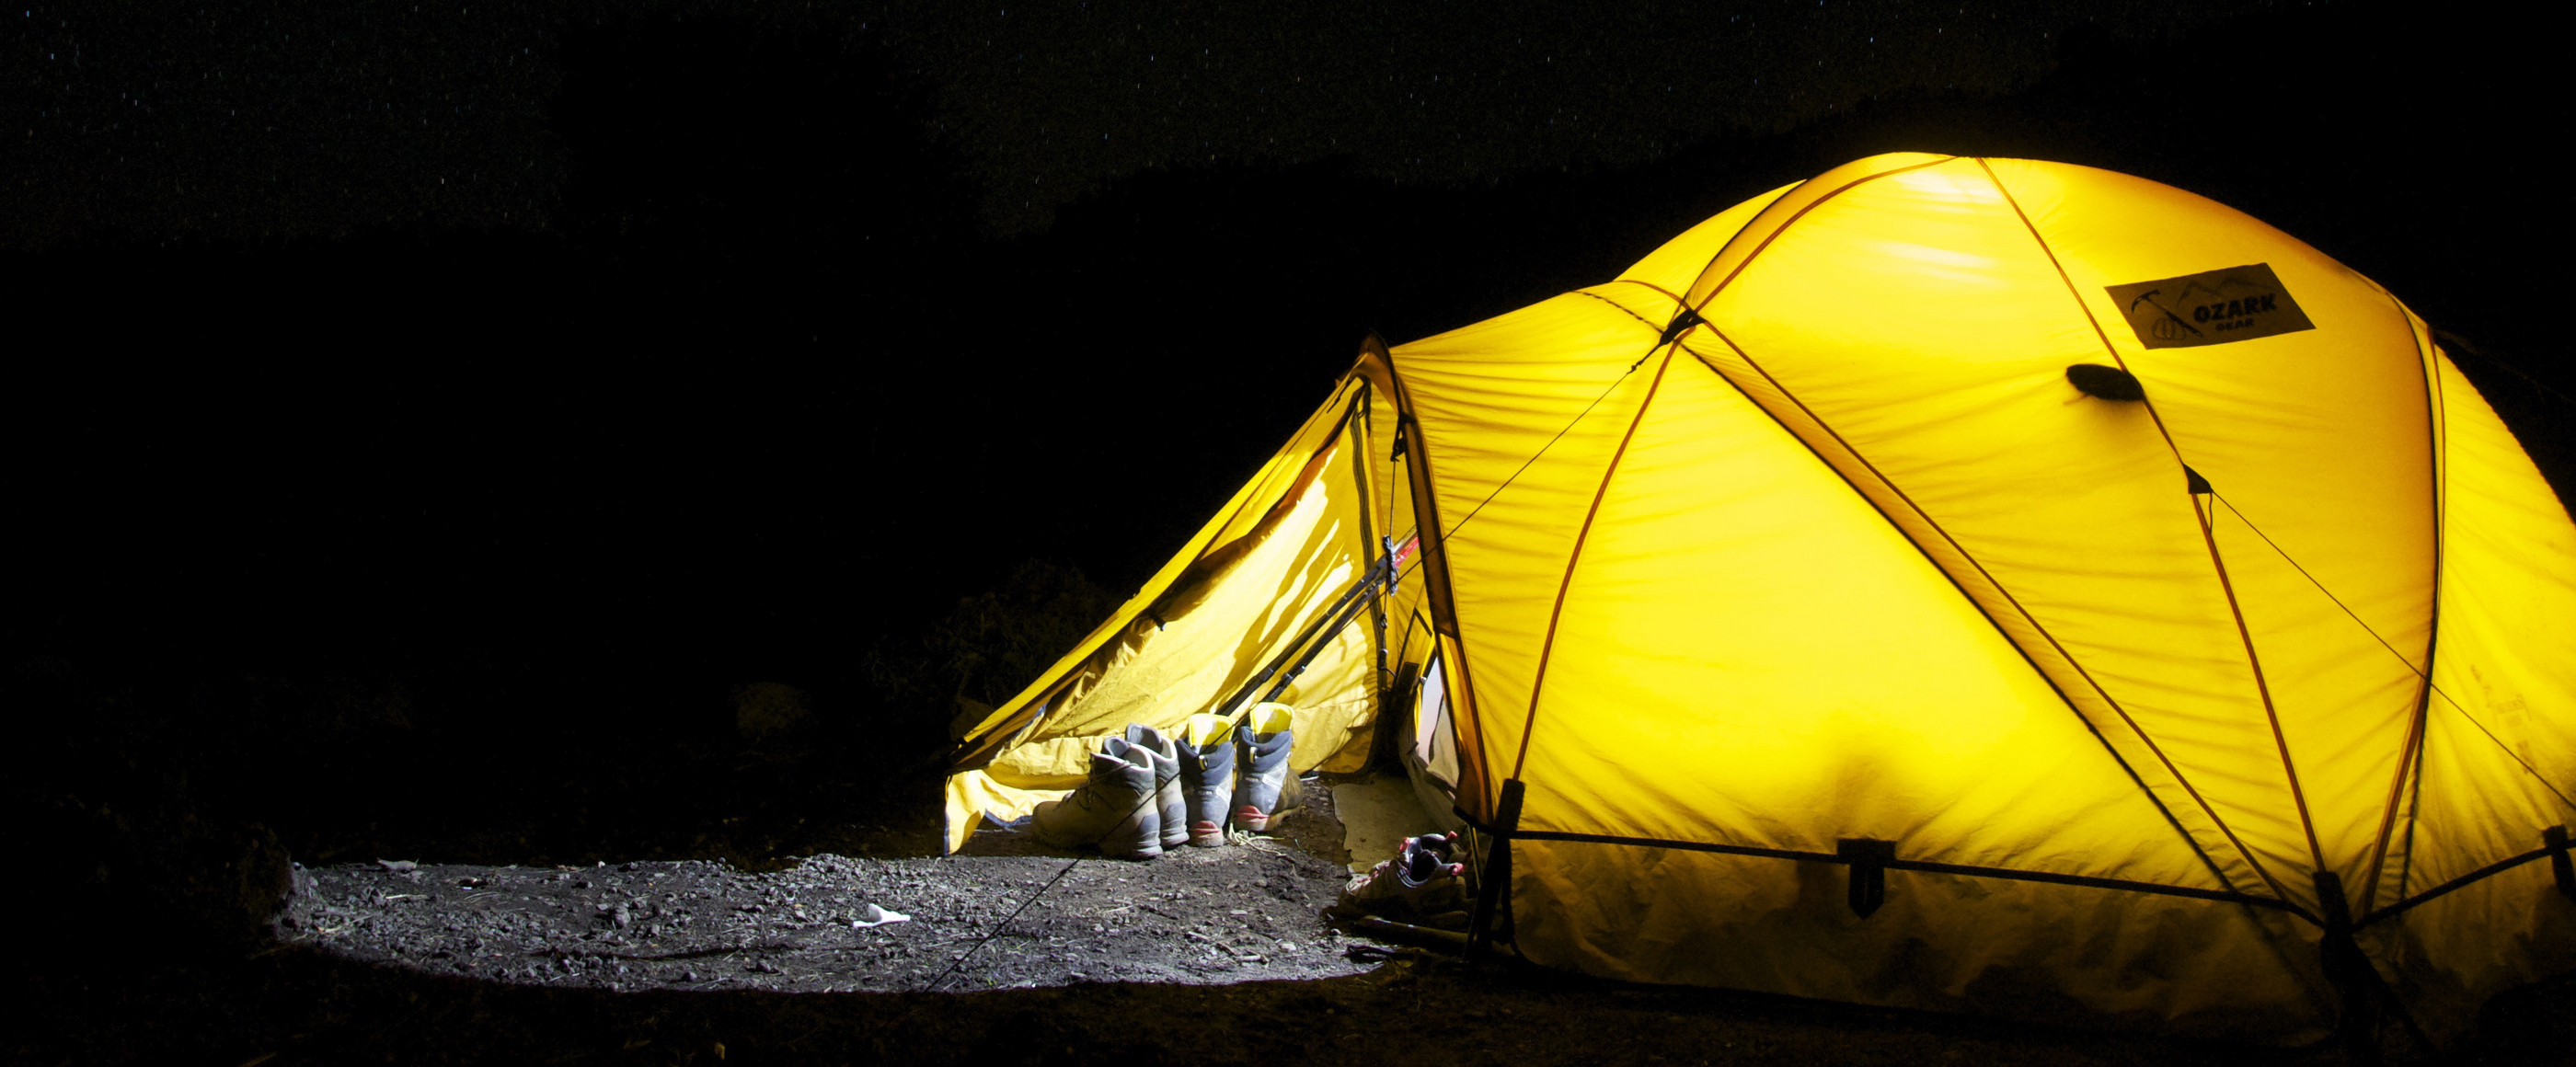 Ein von innen beleuchtetes Zelt bei Nacht.